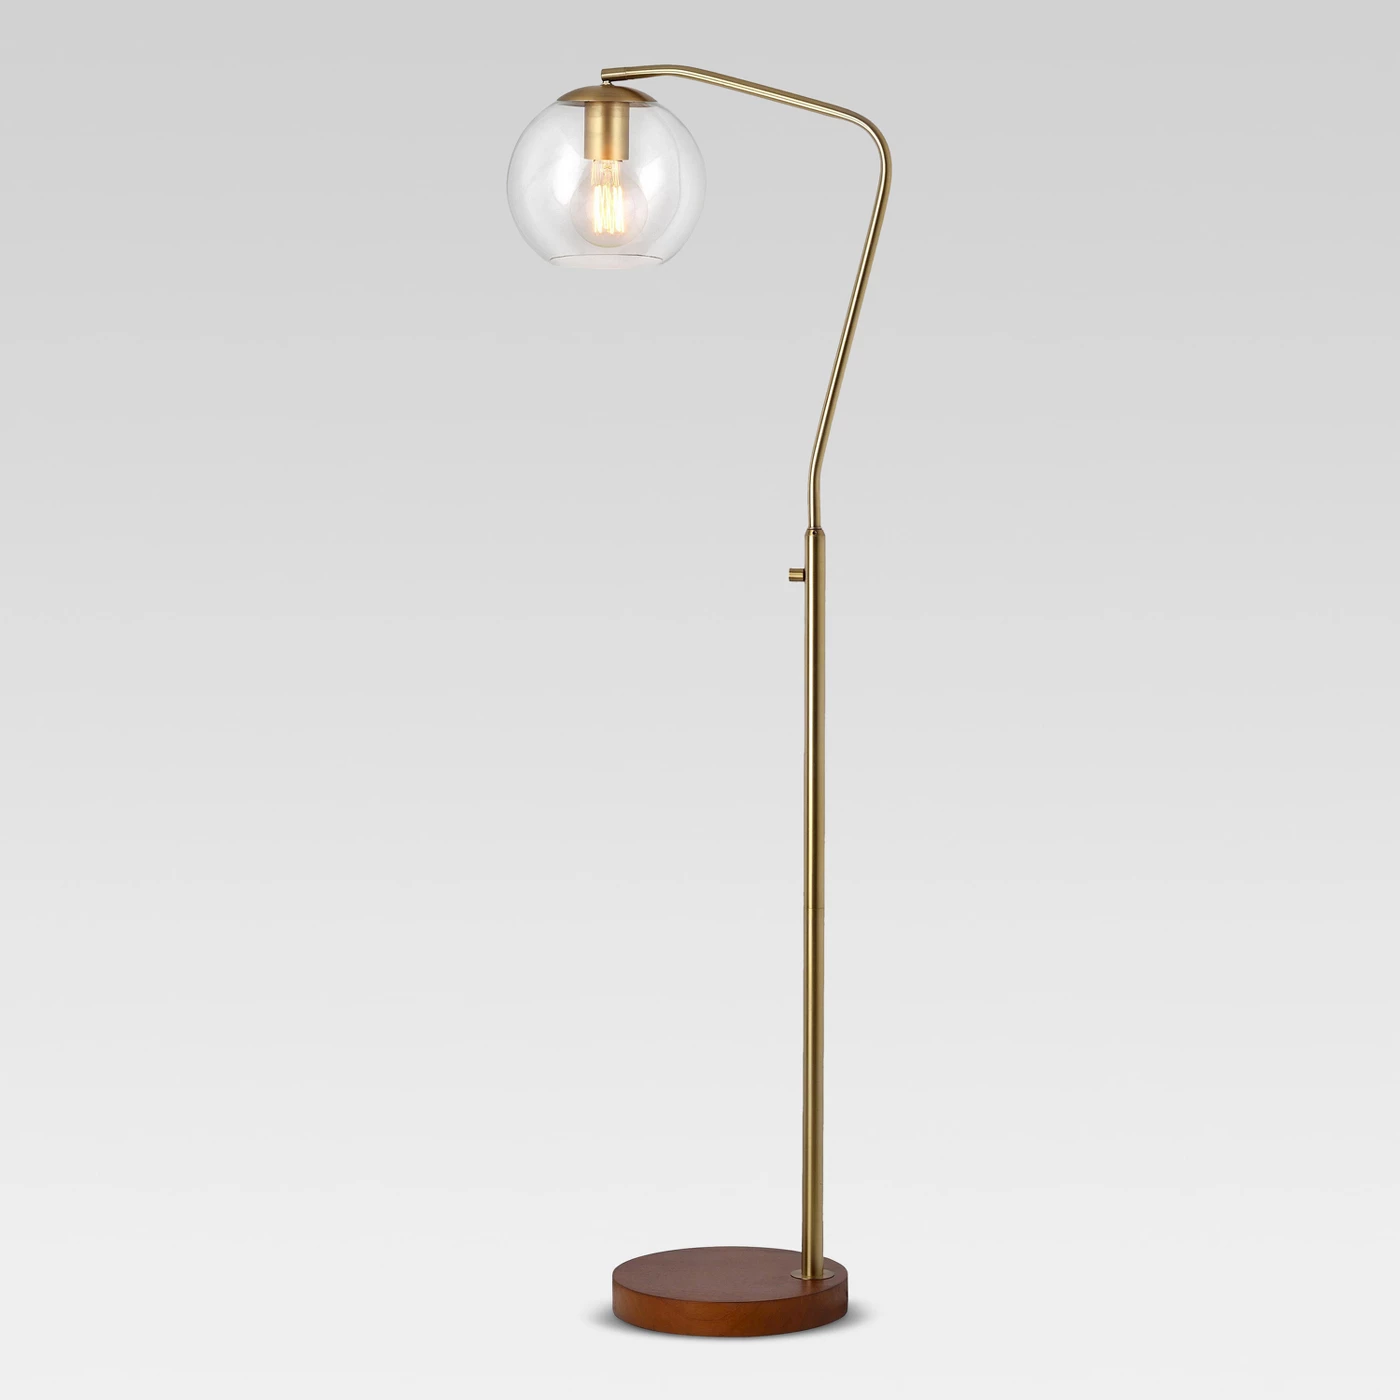 Menlo Glass Globe Floor Lamp - Project 62â¢ - image 2 of 4